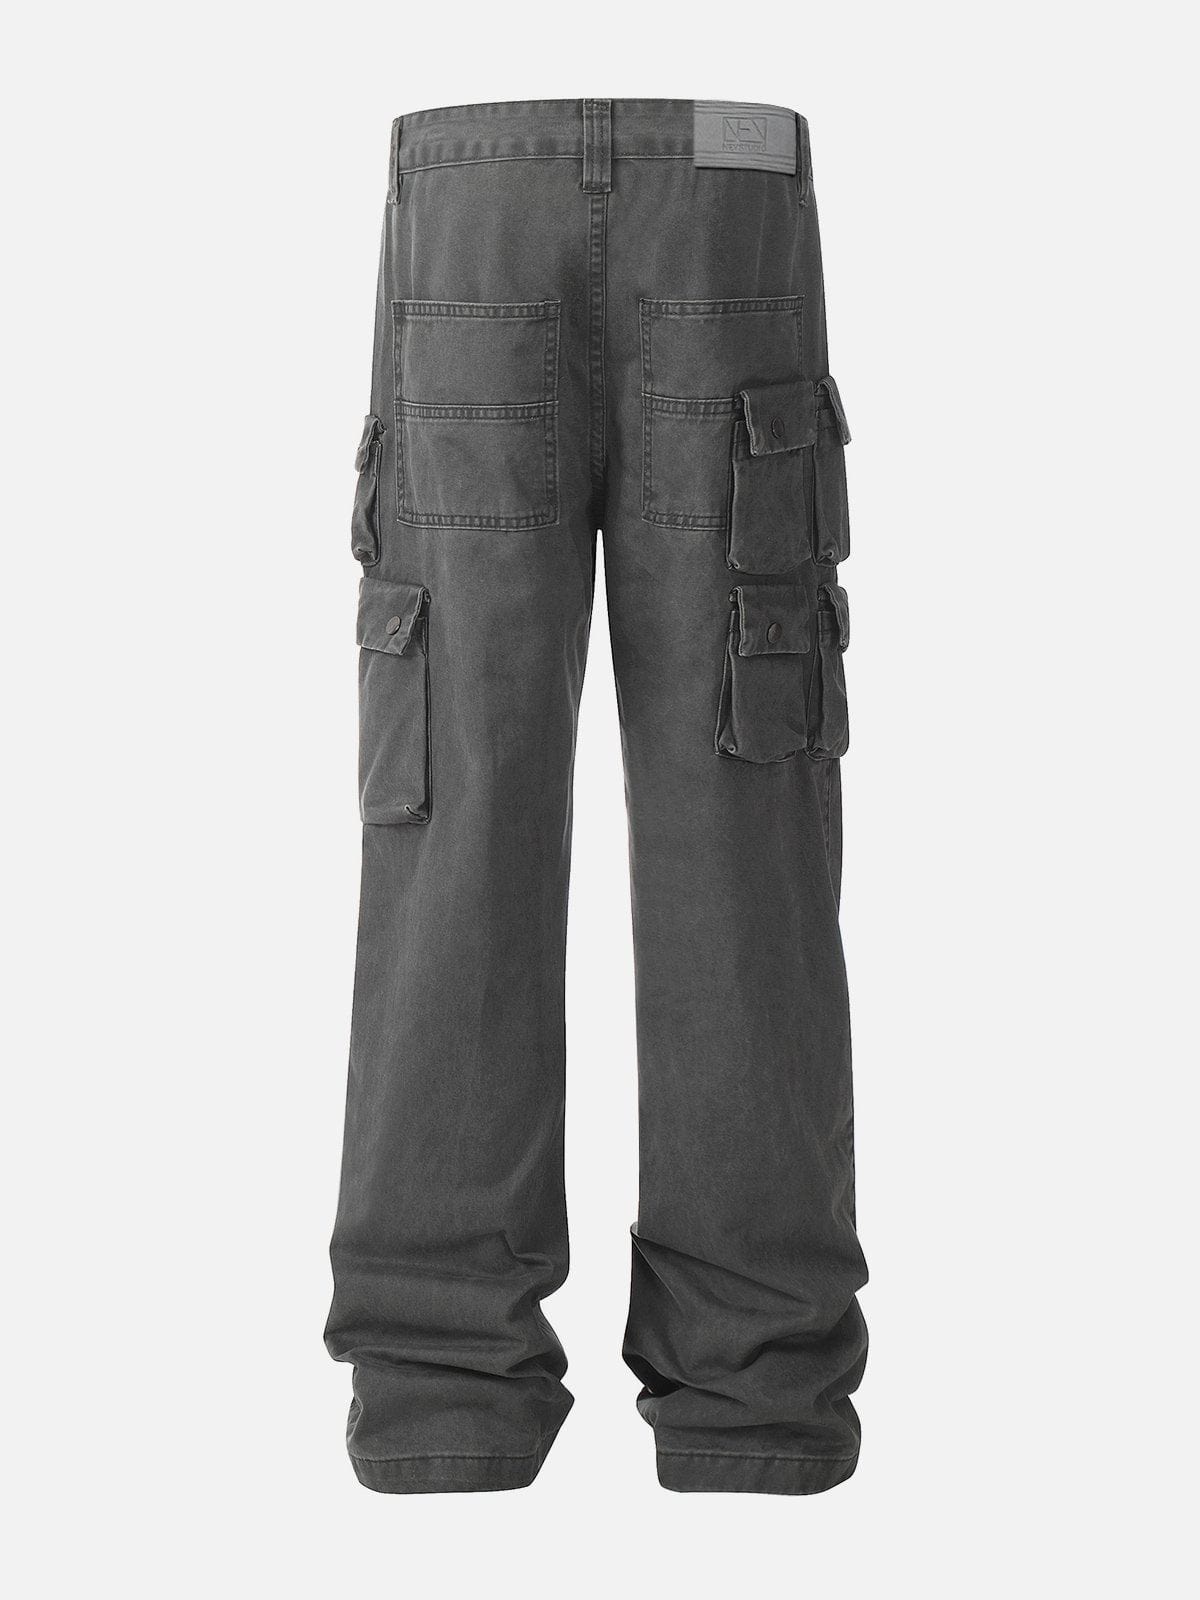 NEV Gray Multi-Pocket Pants